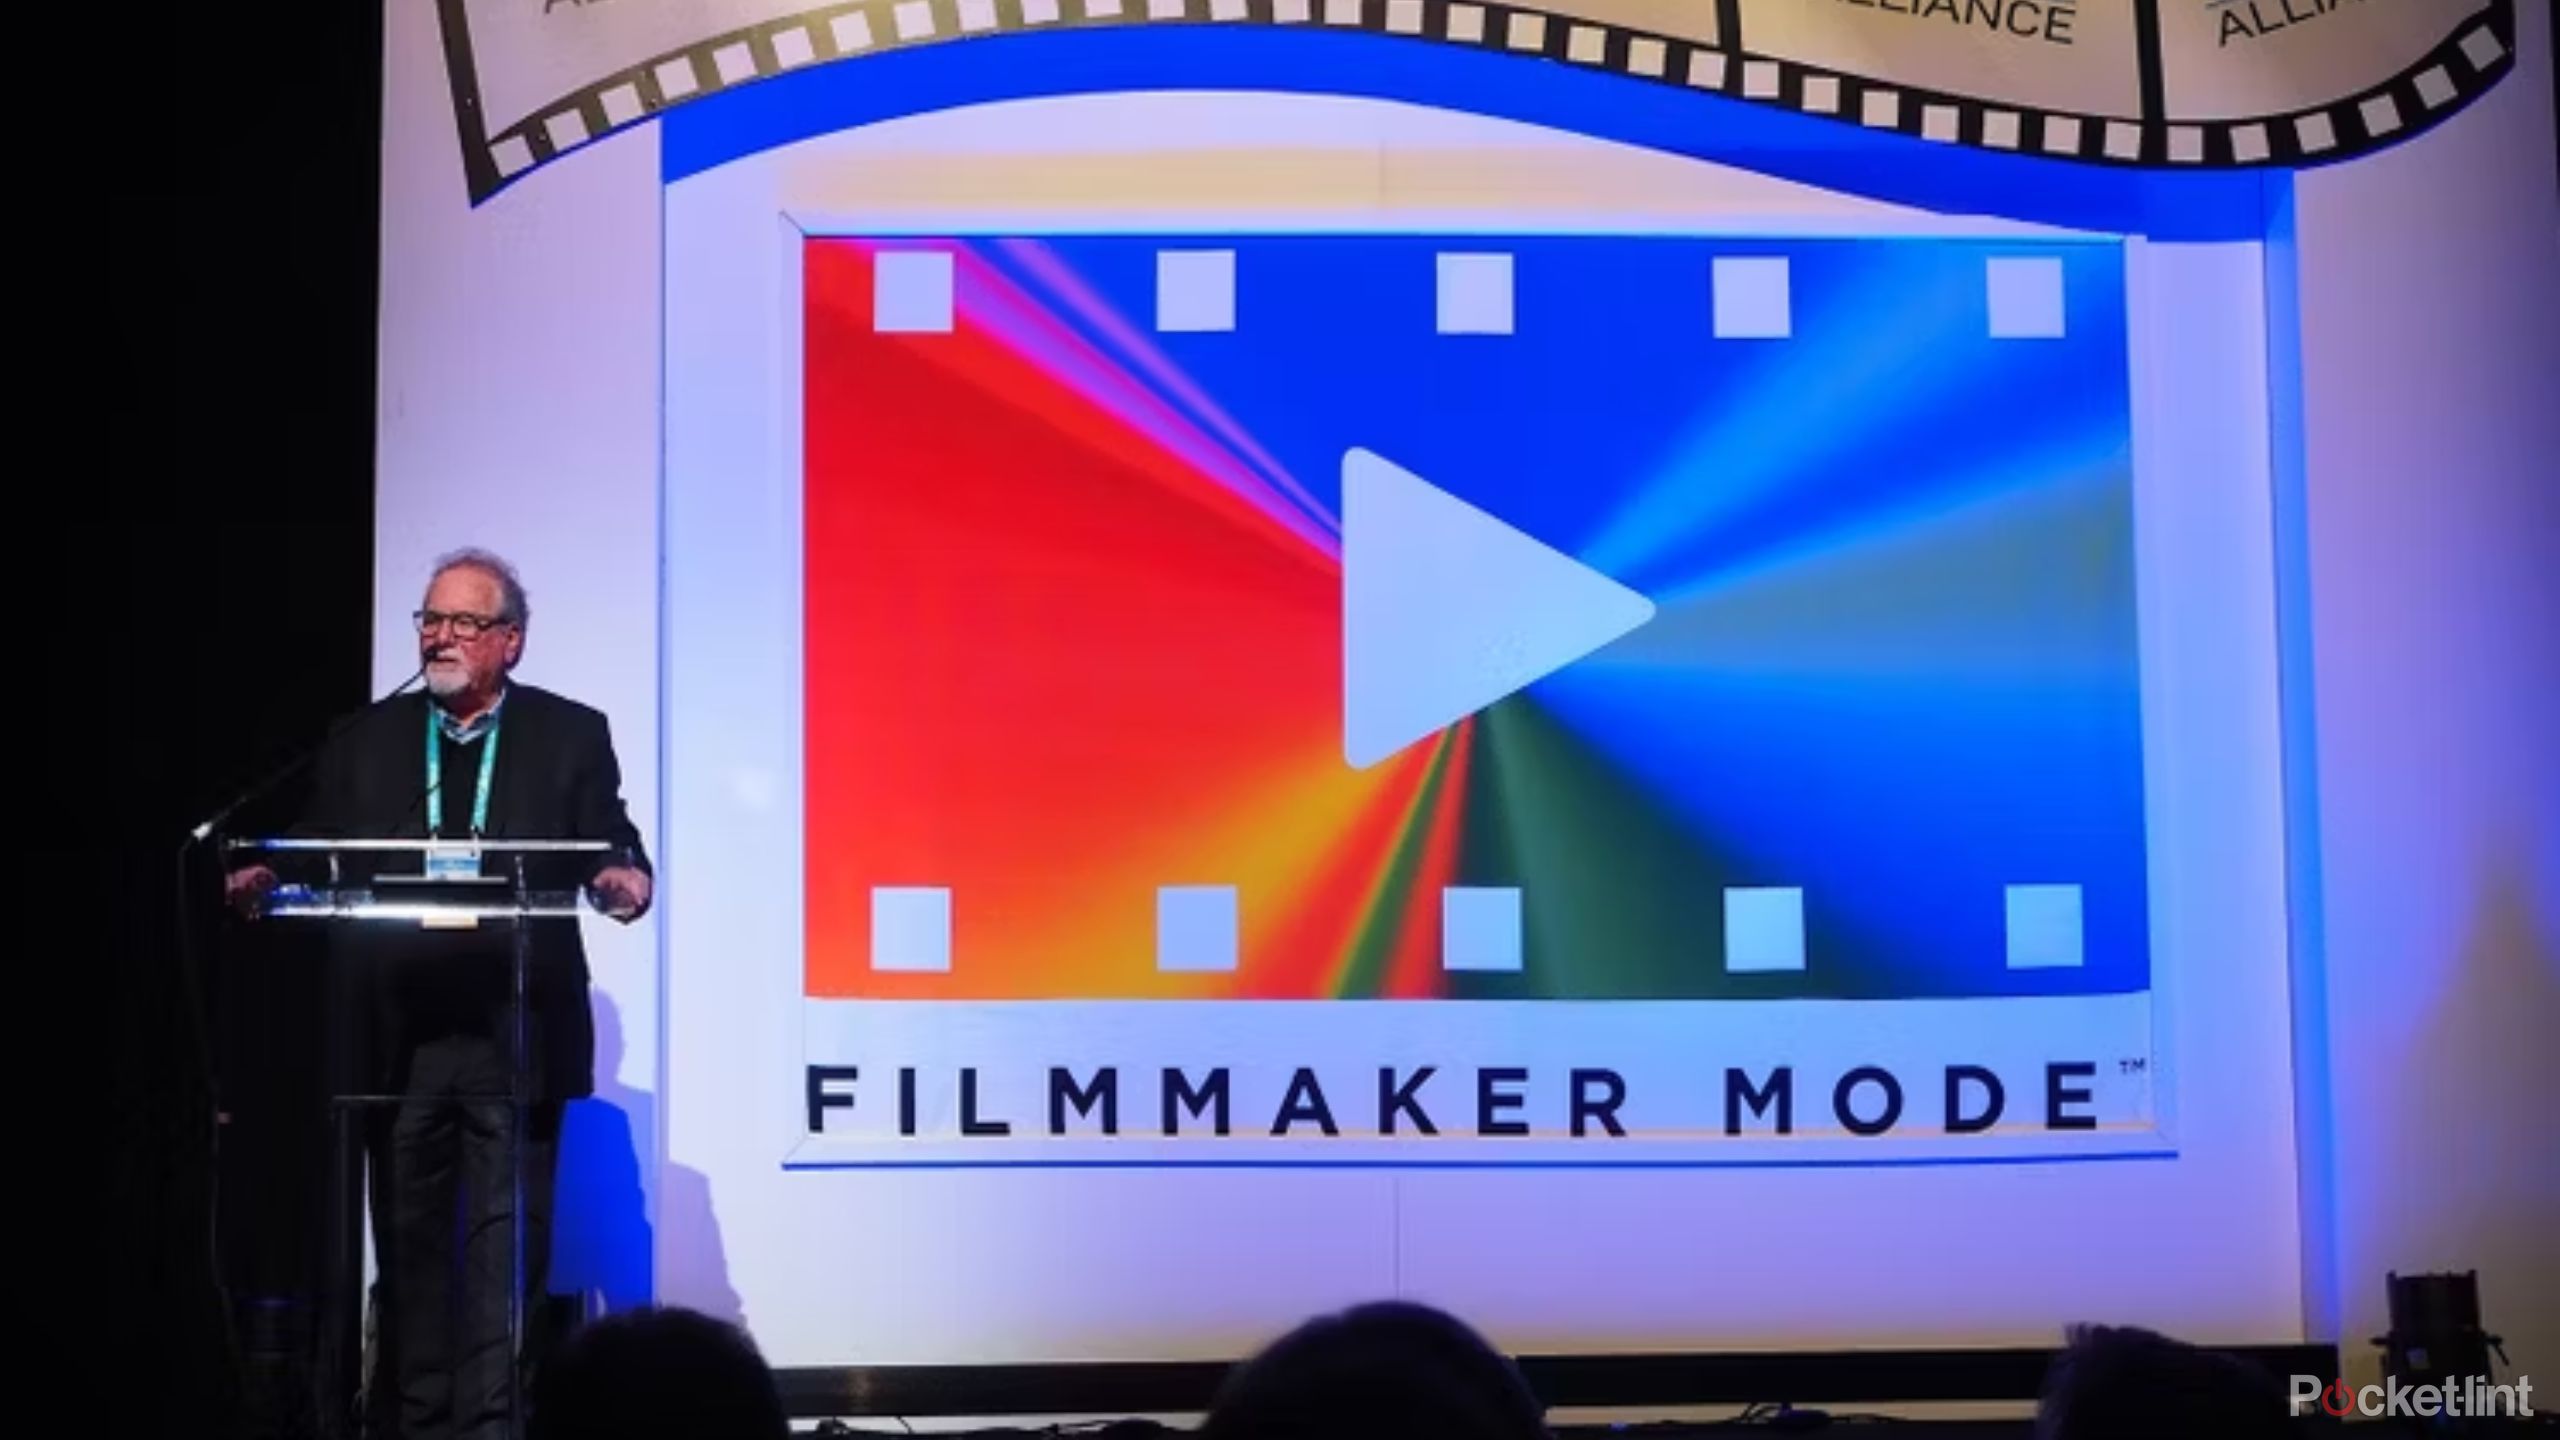 Filmmaker mode